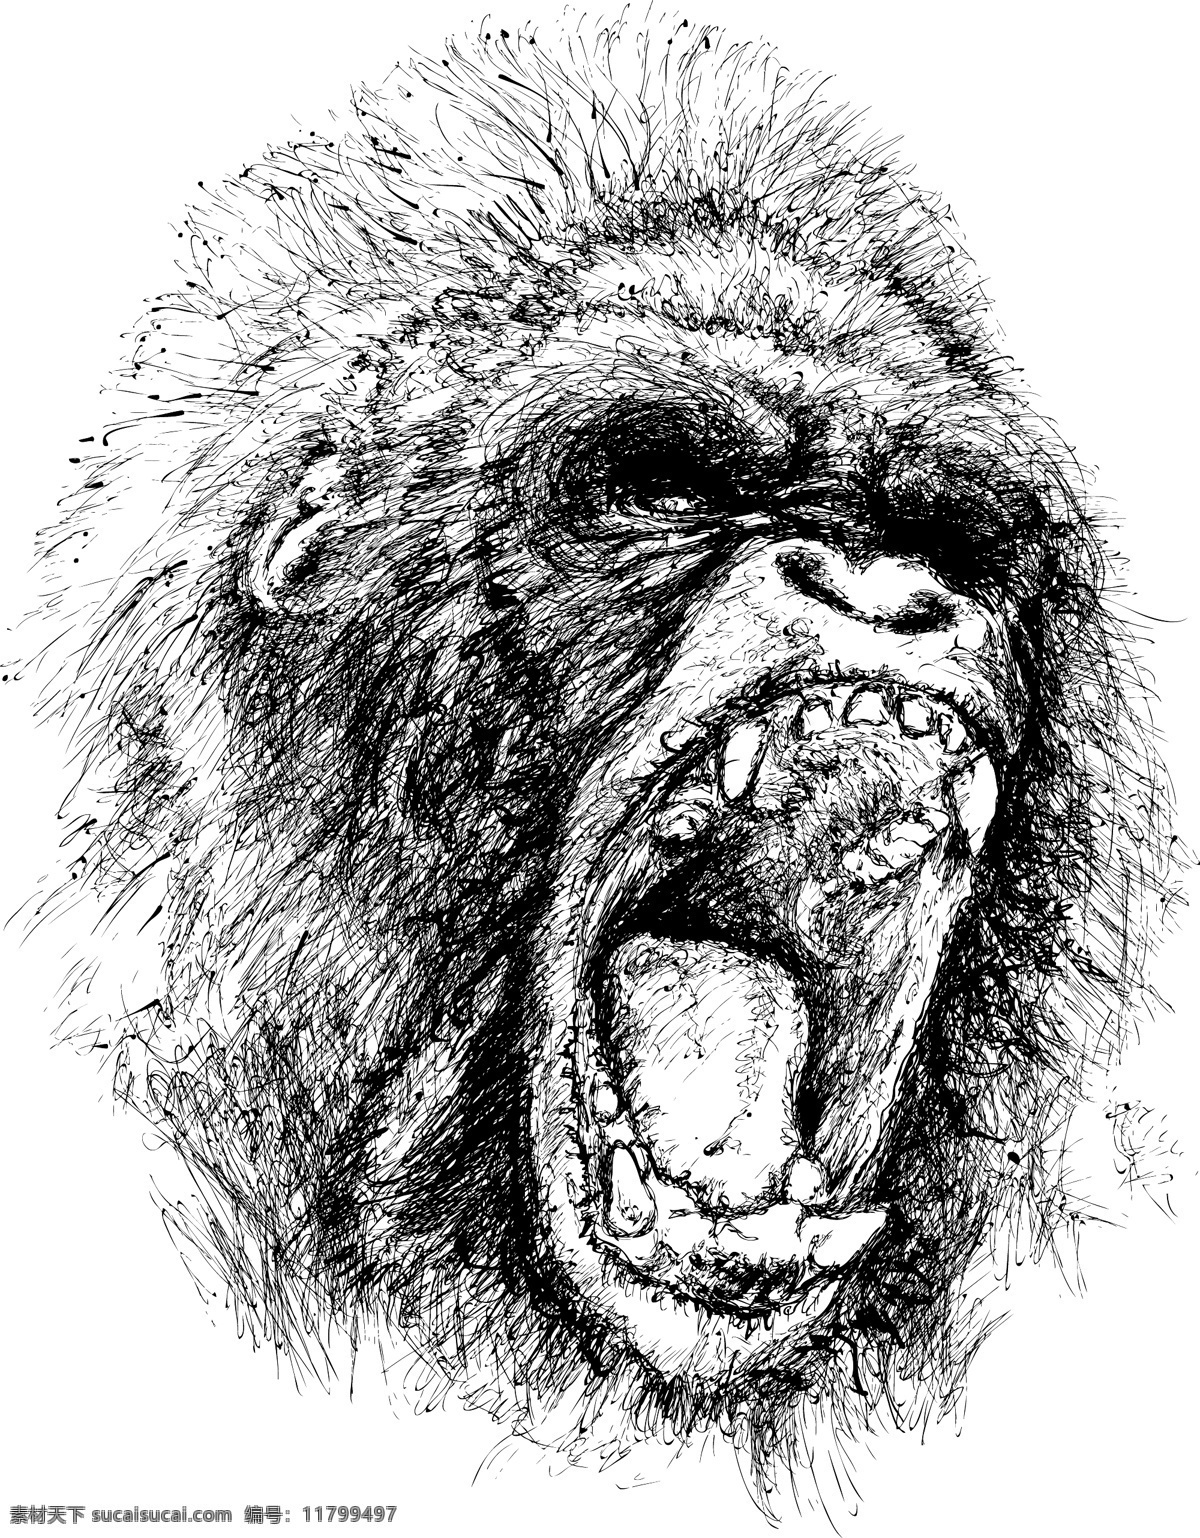 猩猩 黑白头像 生物世界 野生动物 矢量图库